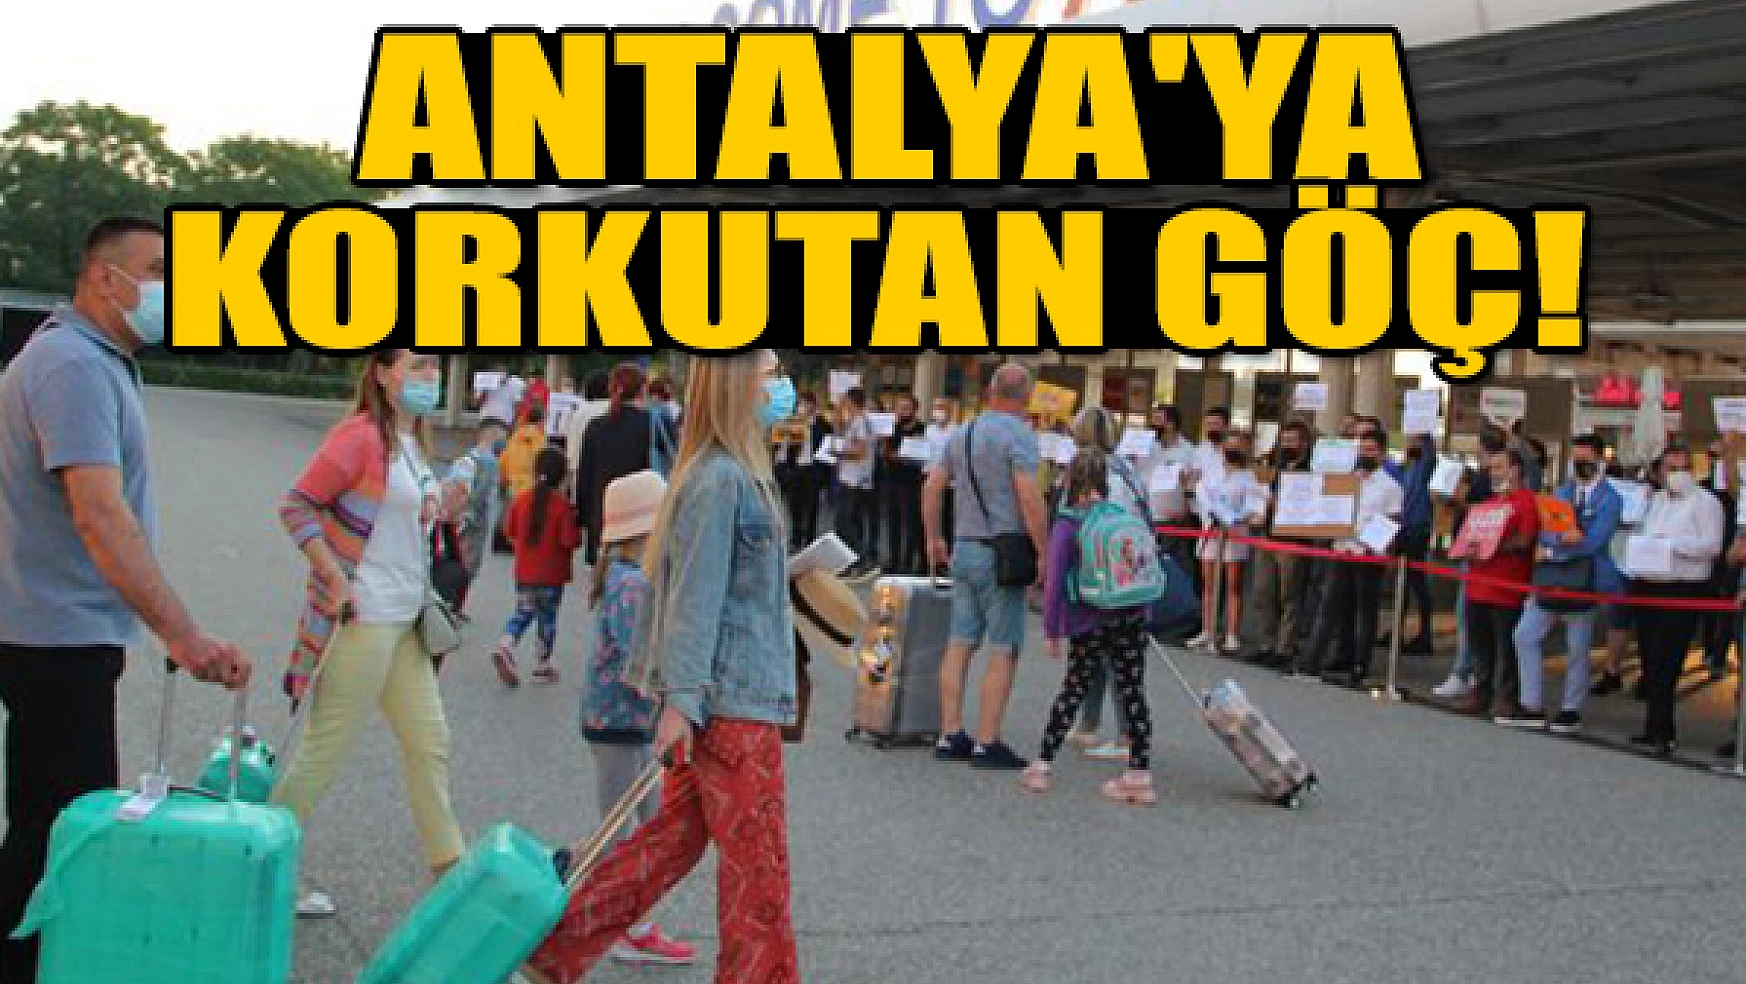 Antalya'ya korkutan göç!